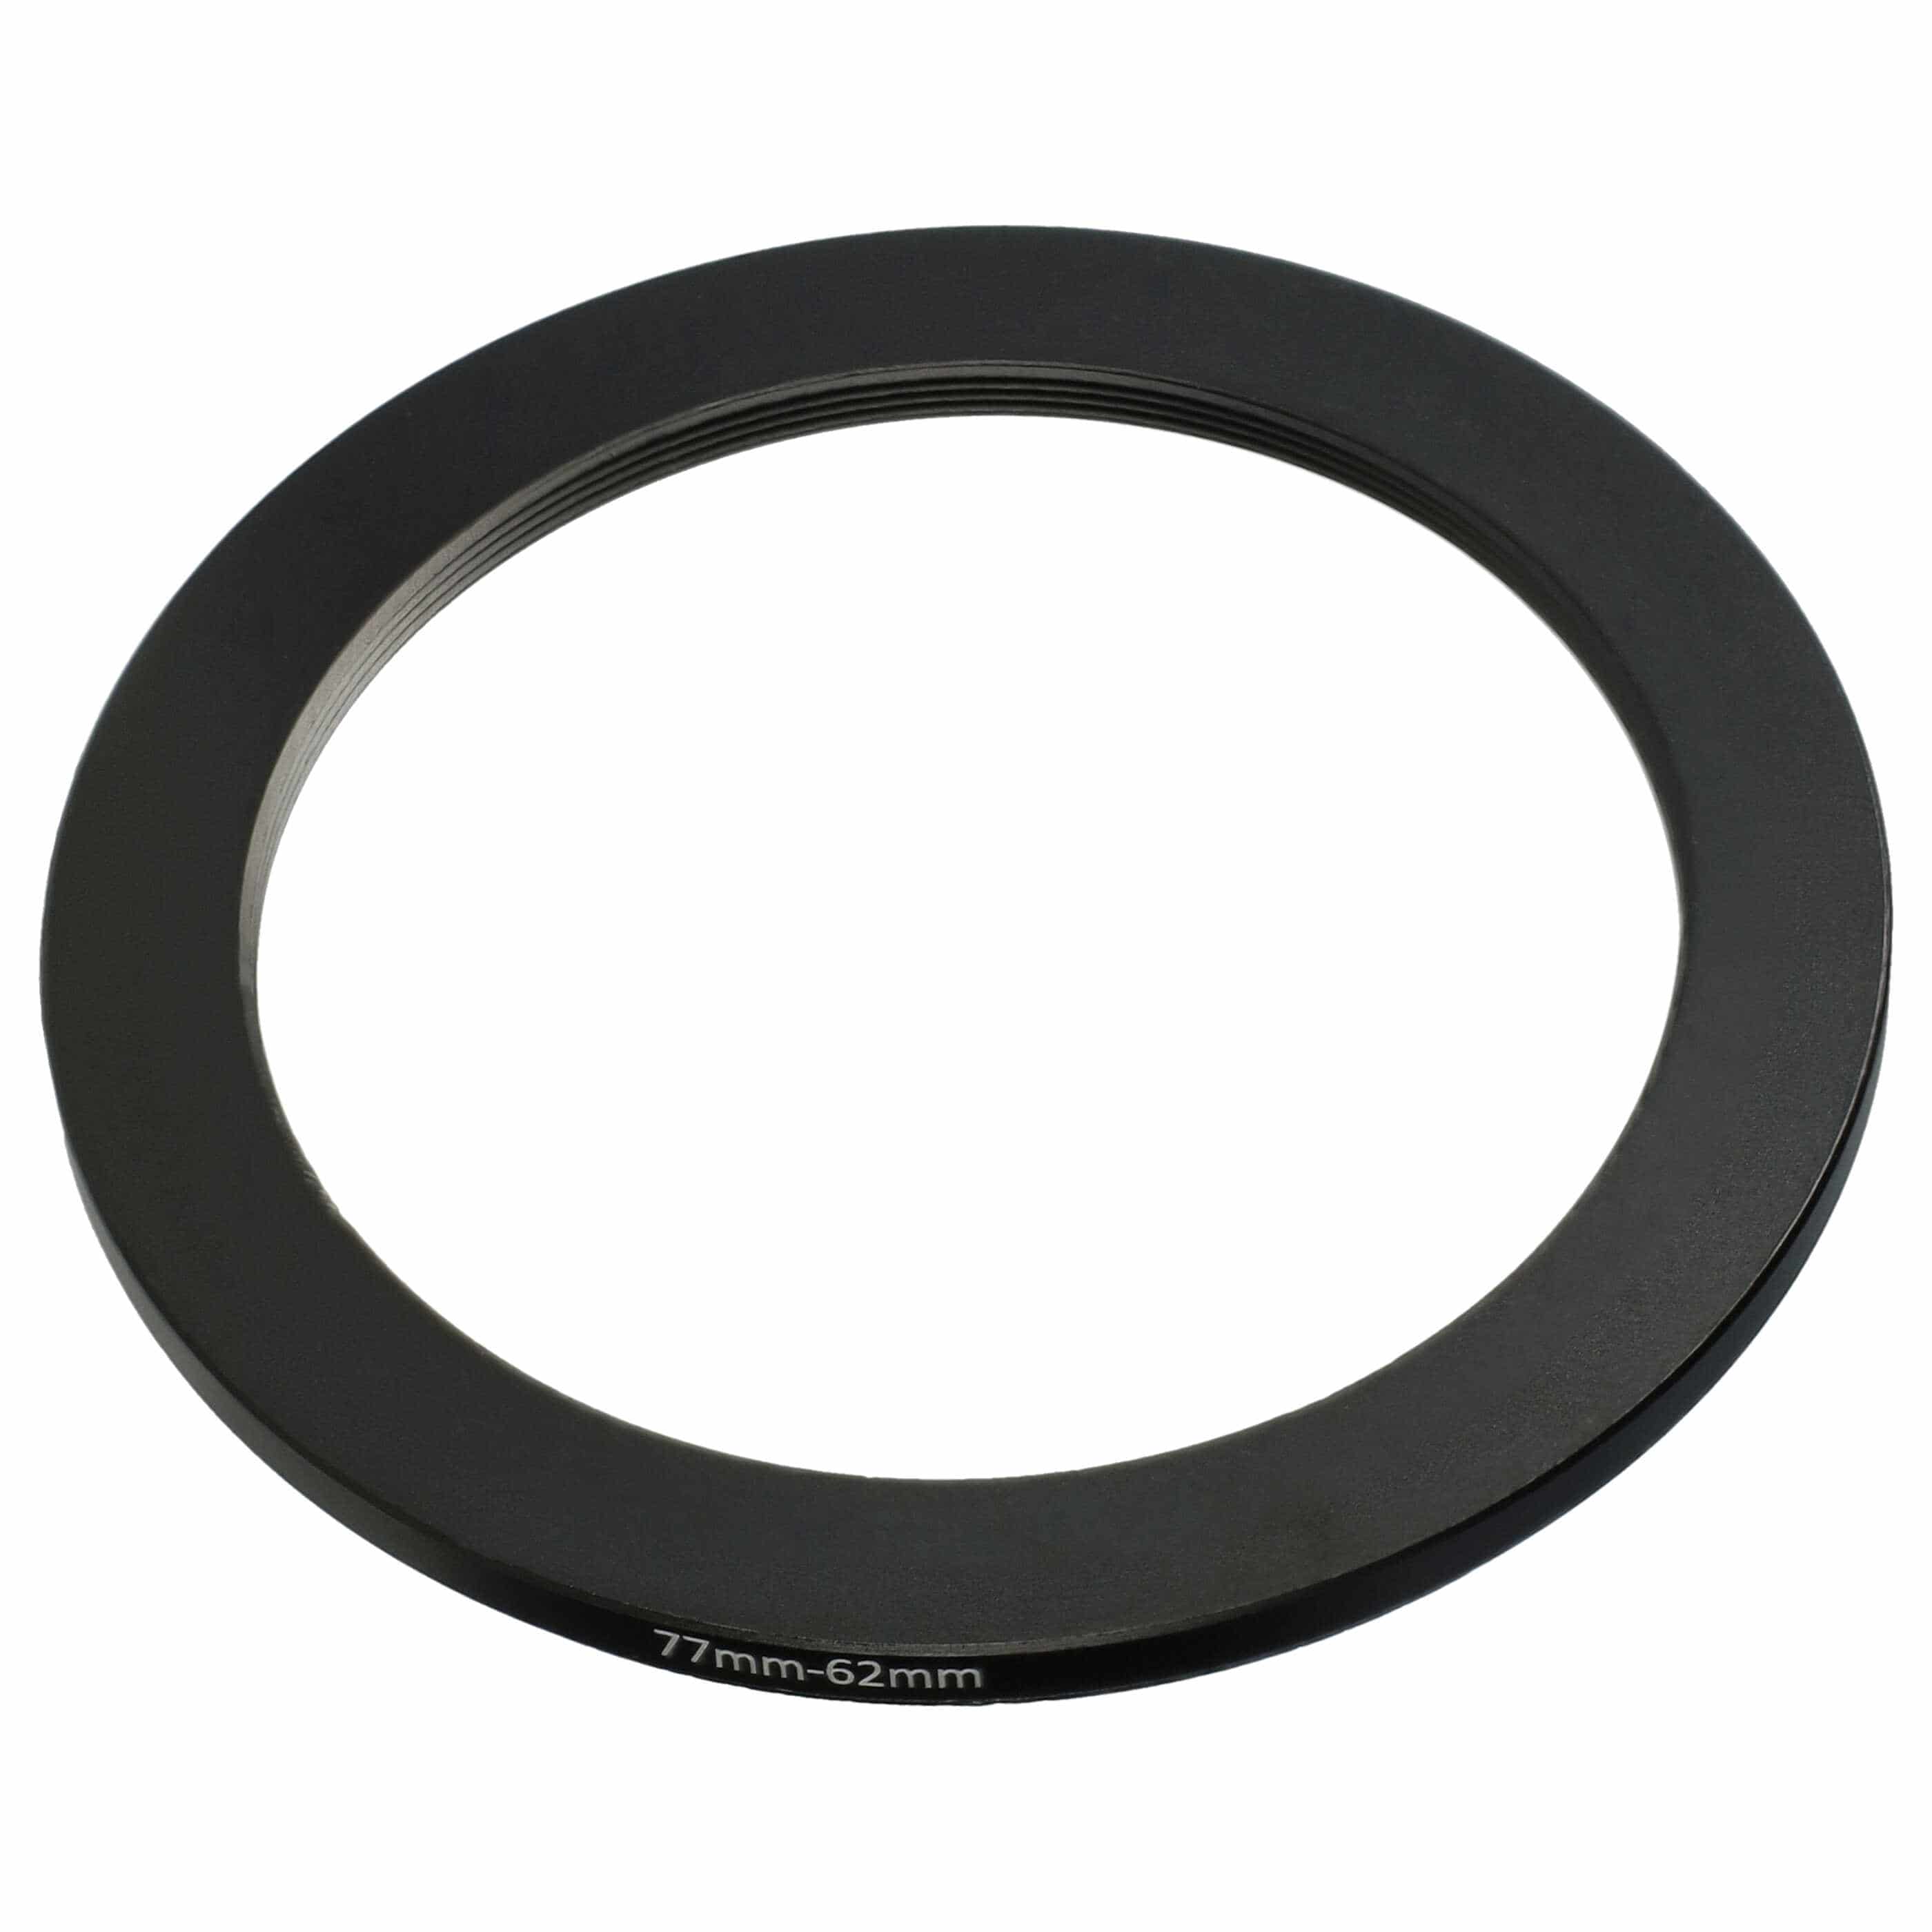 Redukcja filtrowa adapter Step-Down 77 mm - 62 mm pasująca do obiektywu - metal, czarny